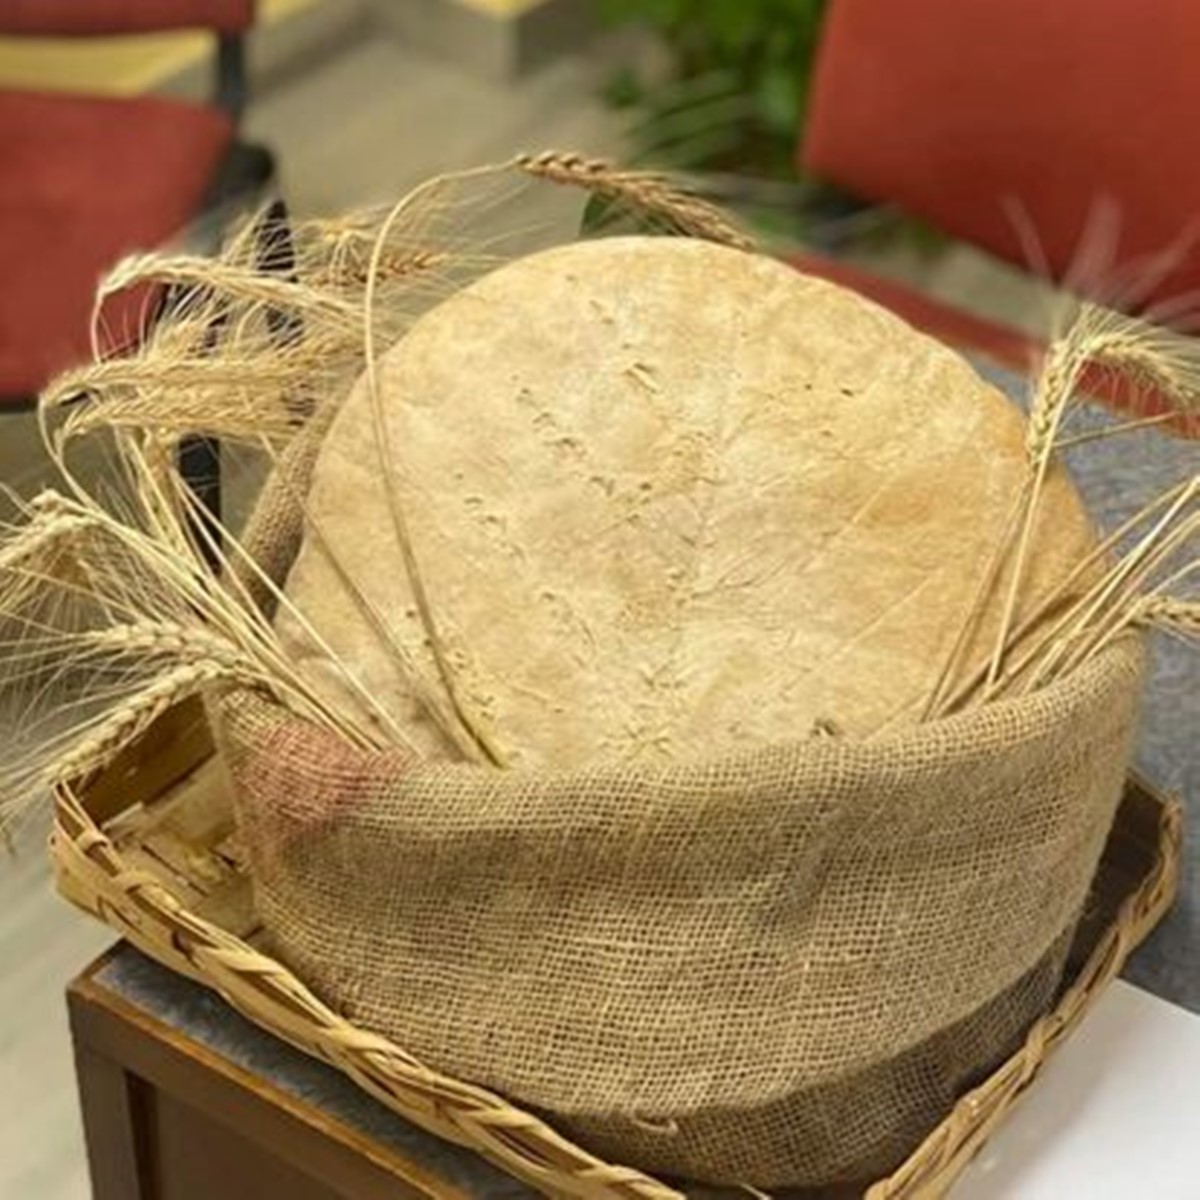 Sagra del pane di grano di Pellegrina: il 9 agosto con Gerardo Sacco